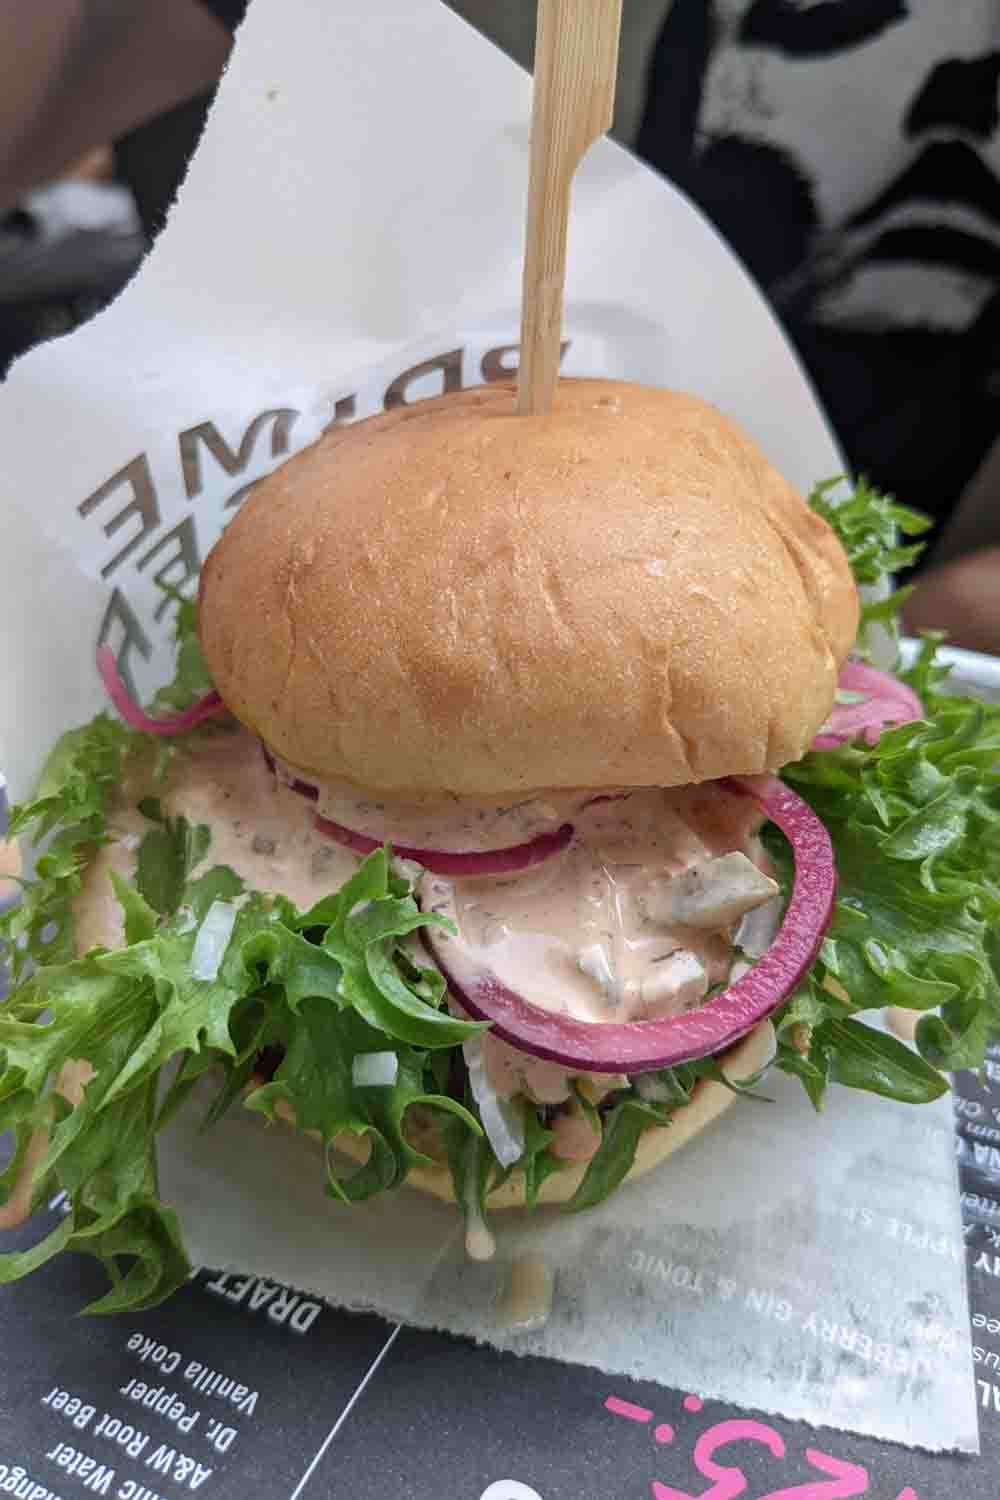 Burger in Stockholm